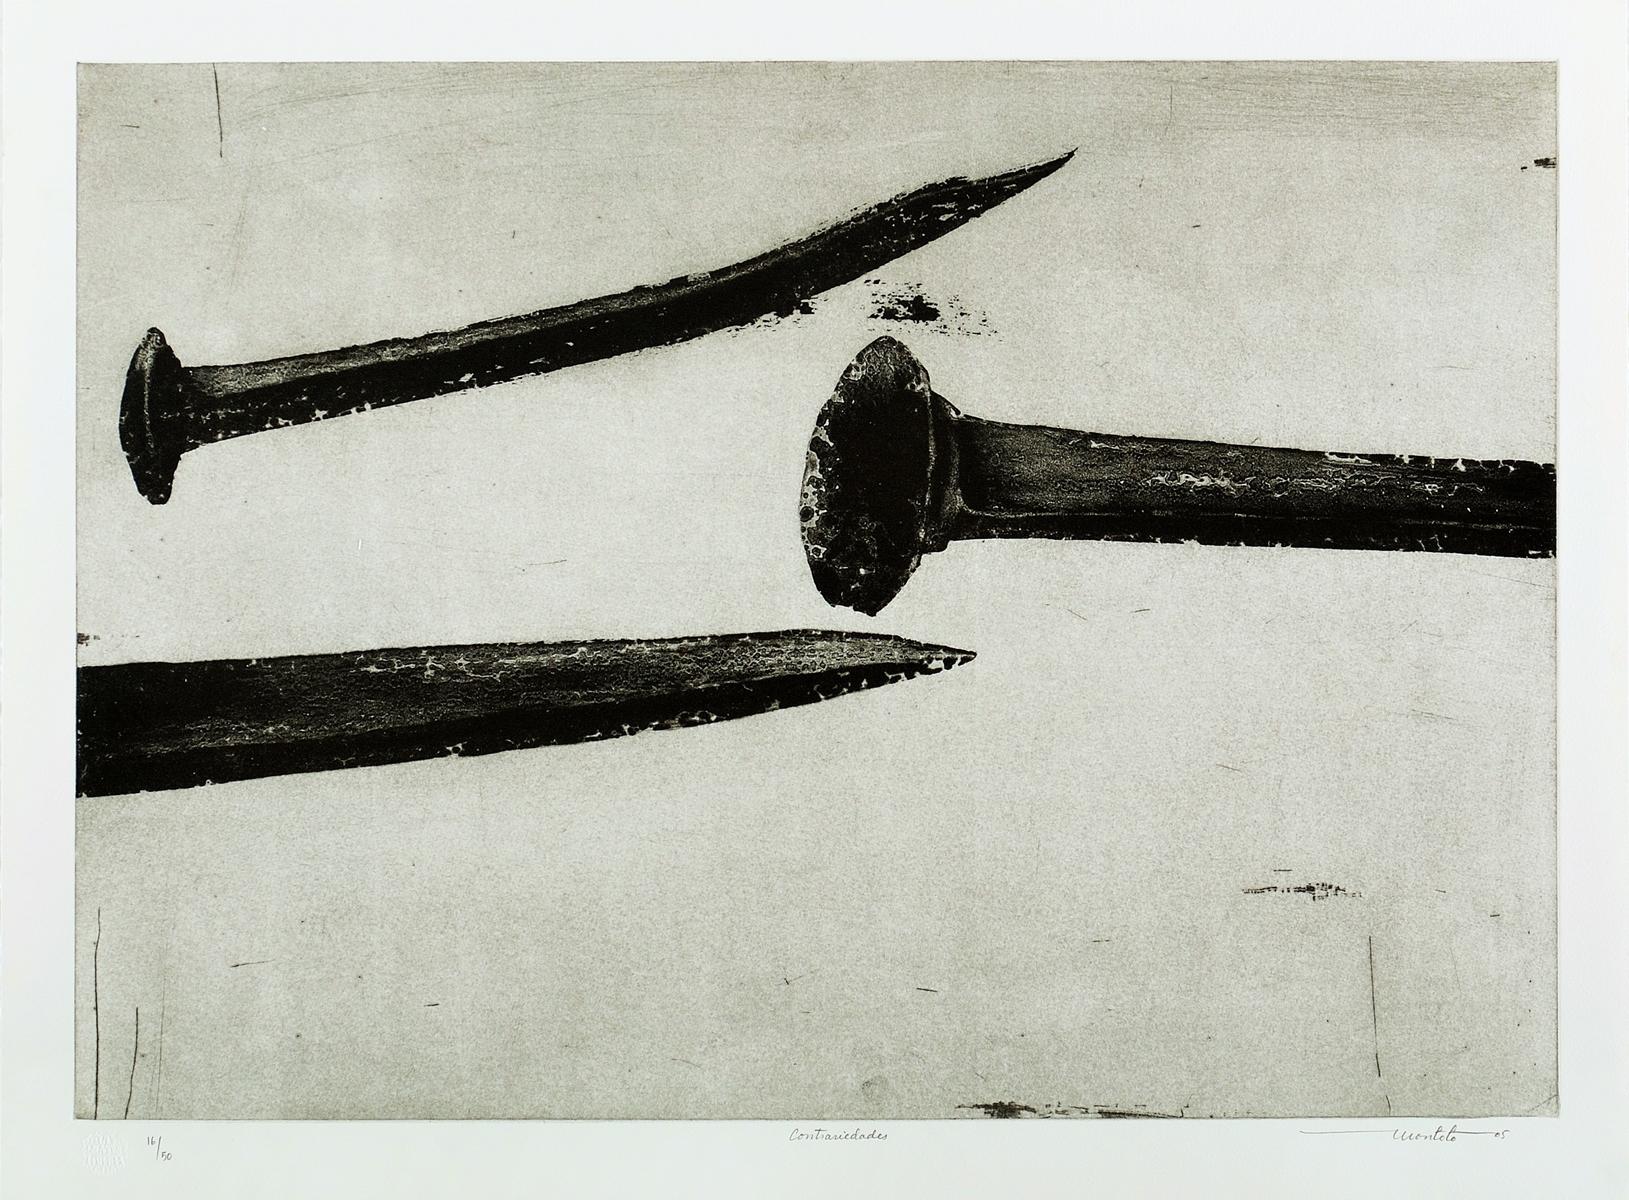 Arturo Montoto (Kuba, 1965)
Gegensätze", 2005
Gravur auf Papier Velin Arches 300 g.
22,9 x 30,6 Zoll (58 x 77,5 cm)
Auflage von 50 Stück
ID: MON-103
Ungerahmt